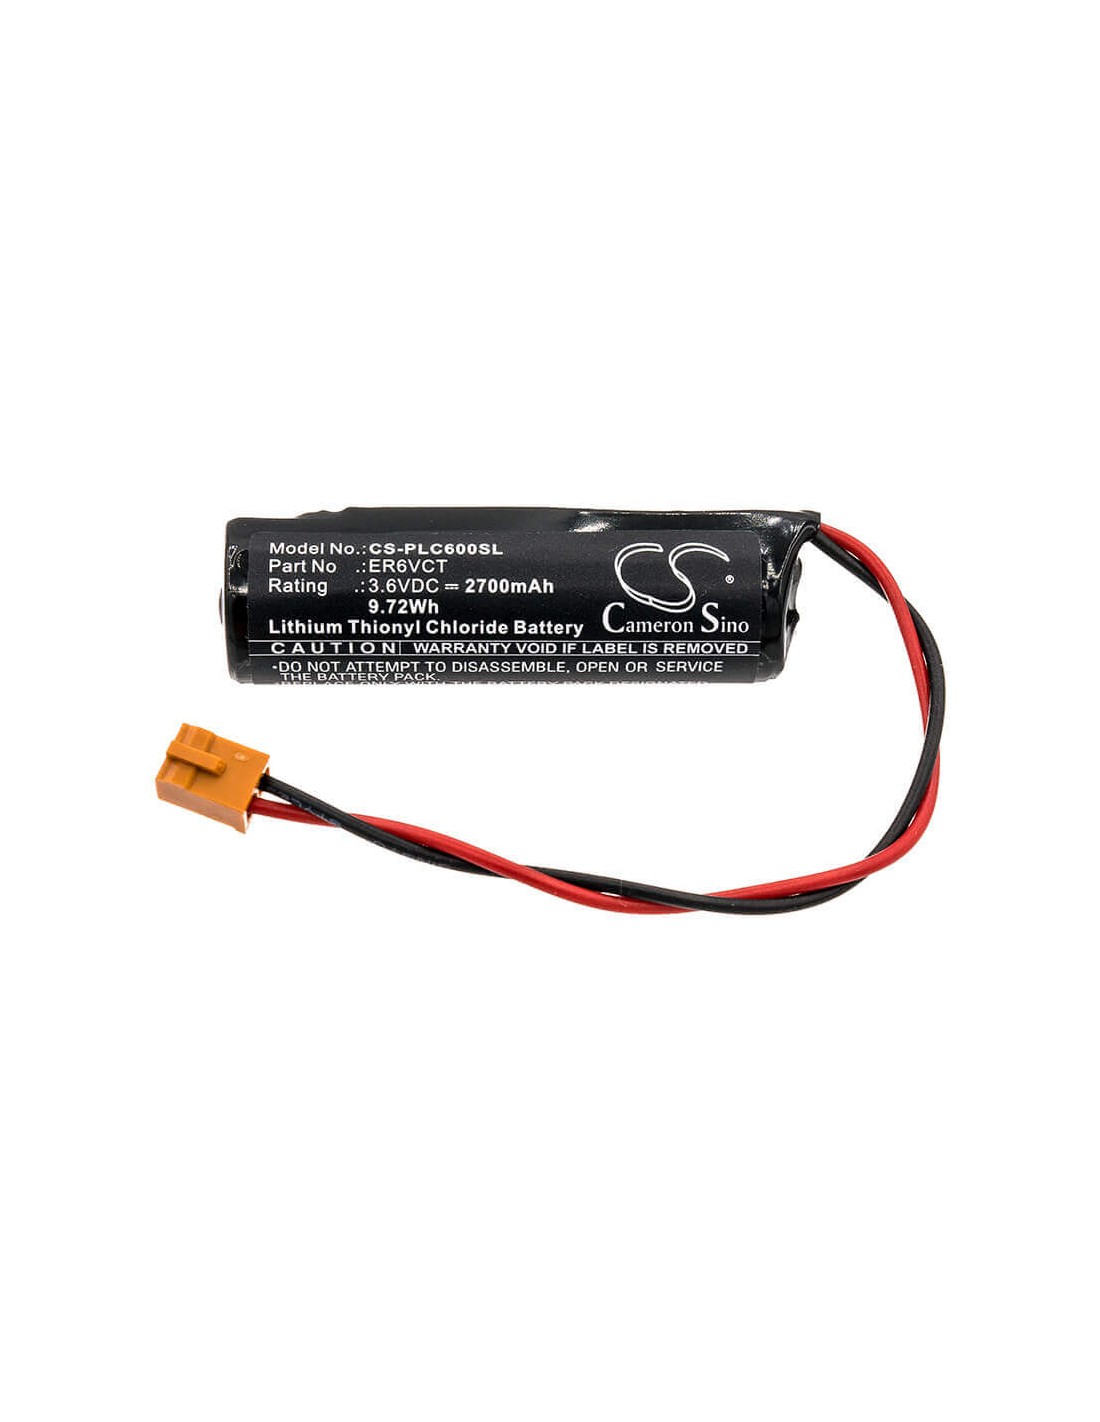 Battery for Toshiba, Er6vct, Ls14500-pr, Note 3.6V, 2700mAh - 9.72Wh